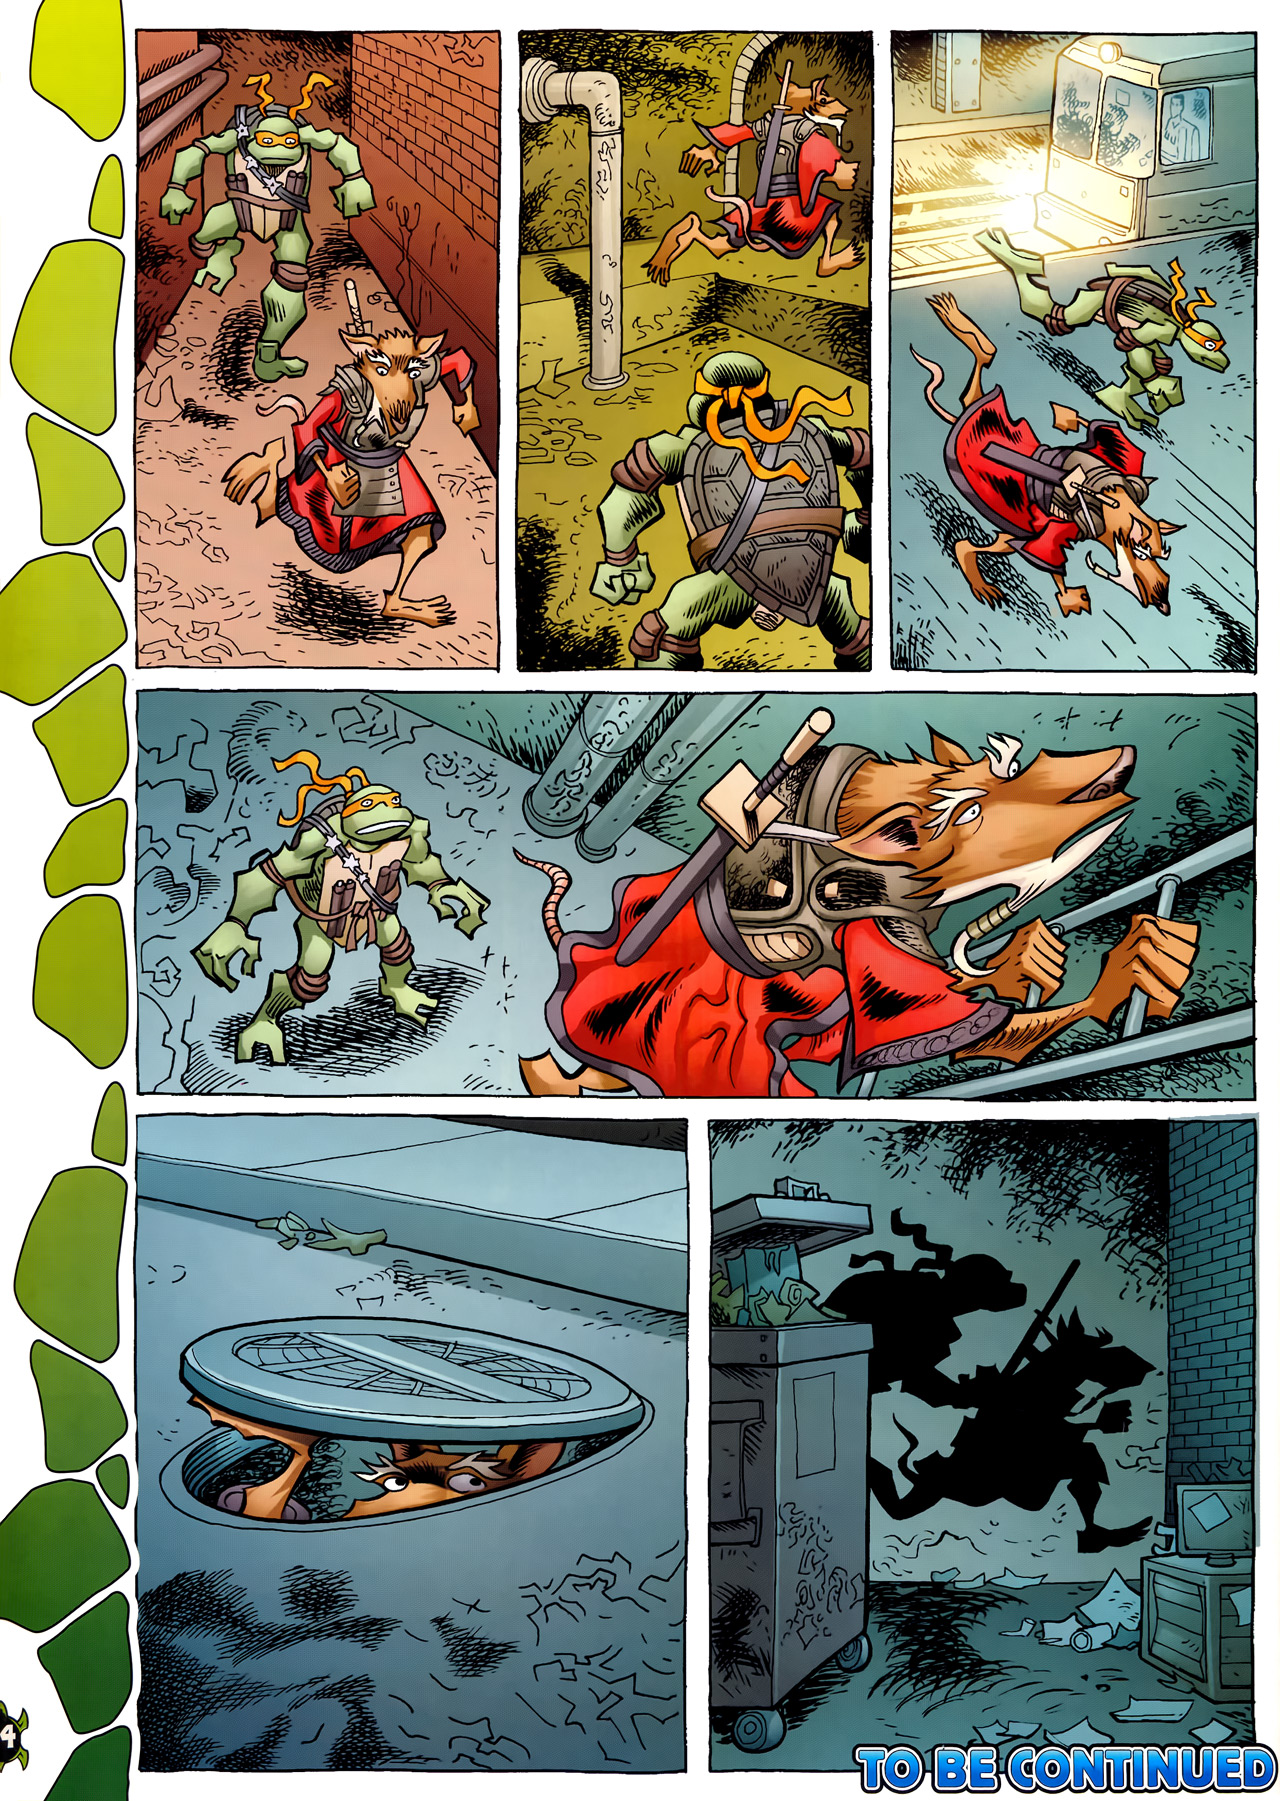 Read online Teenage Mutant Ninja Turtles Comic comic -  Issue #6 - 36